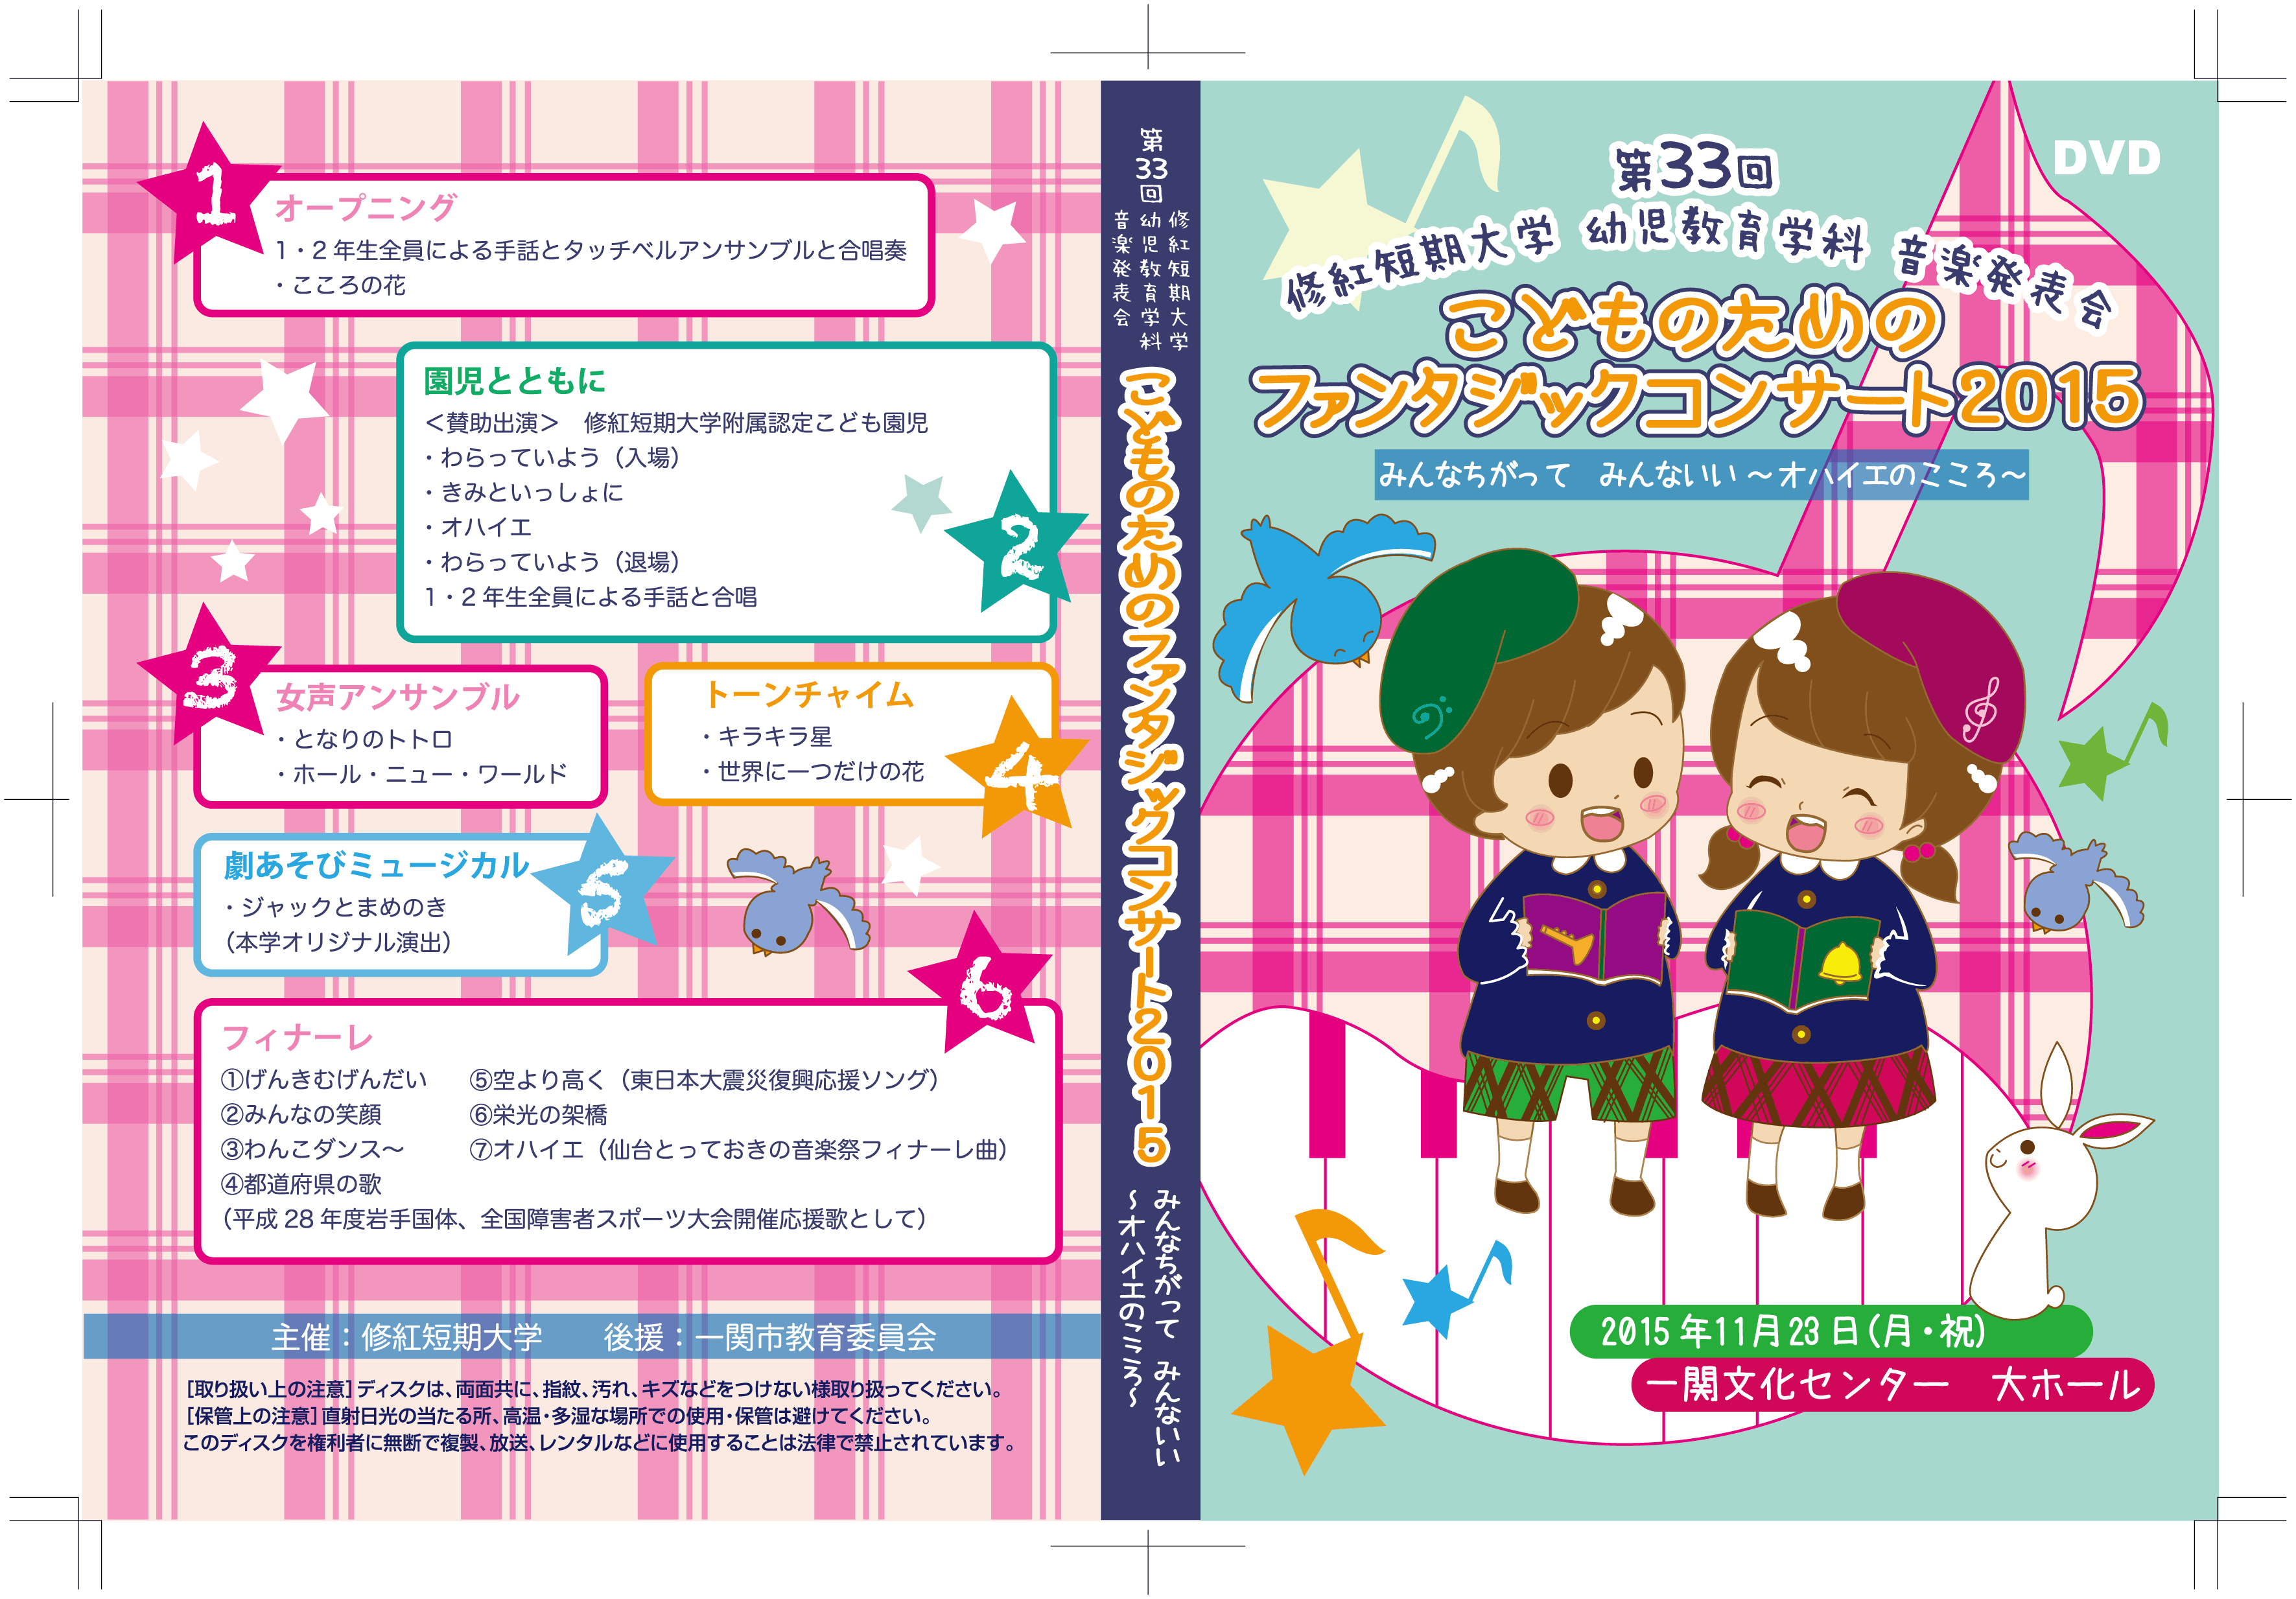 ジャケット(こどものためのファンタジックコンサート2015)